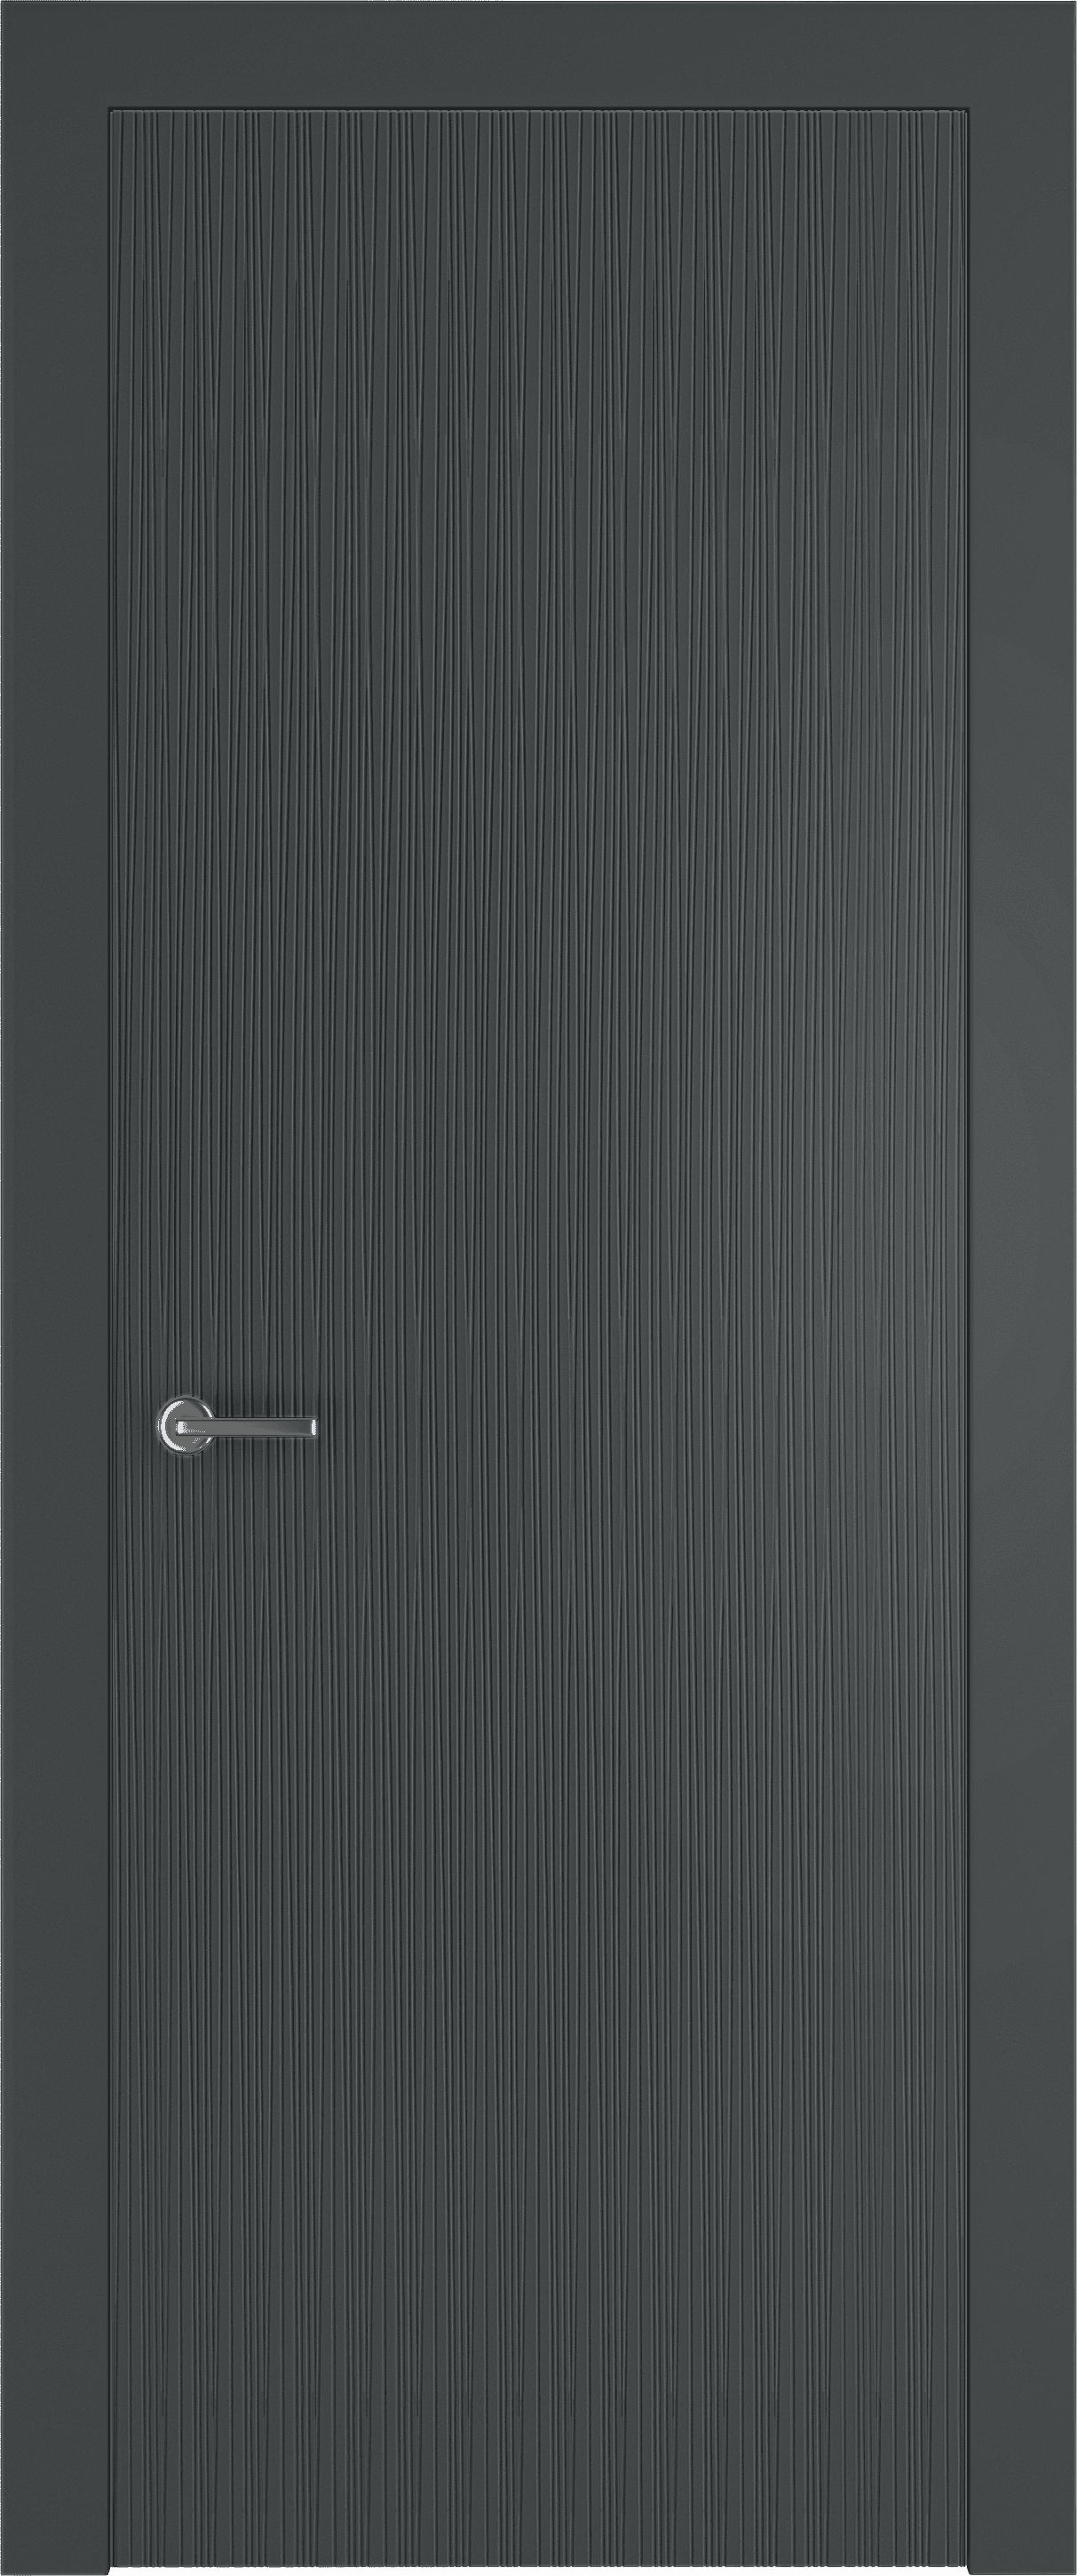 межкомнатные двери эмалированная межкомнатная дверь terso 05 серый 7011